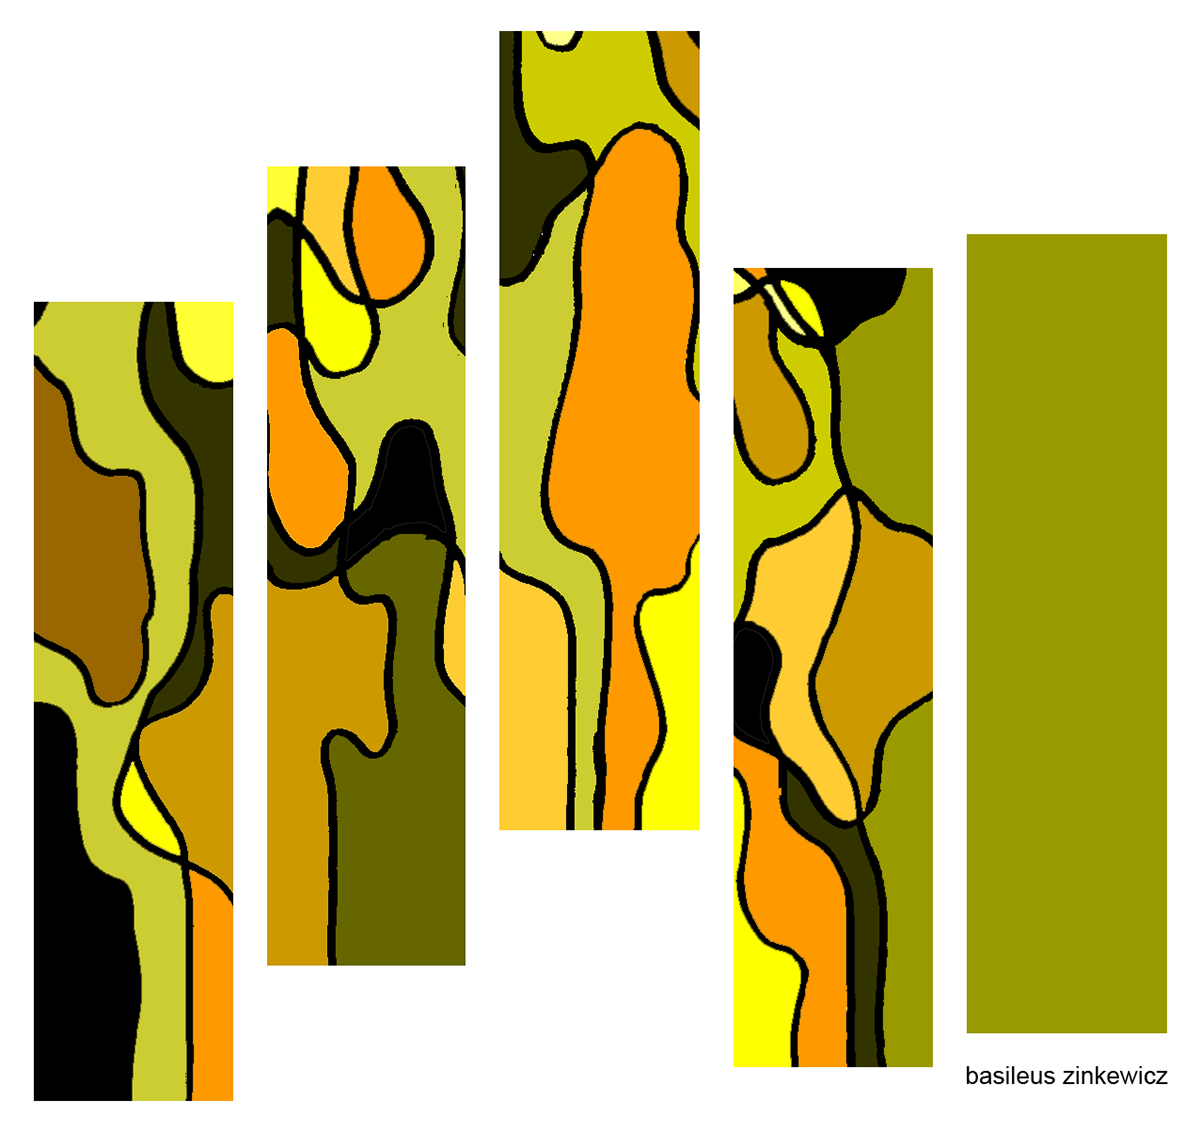 sketch basileus zinkewicz city camouflage ukraine Kyiv